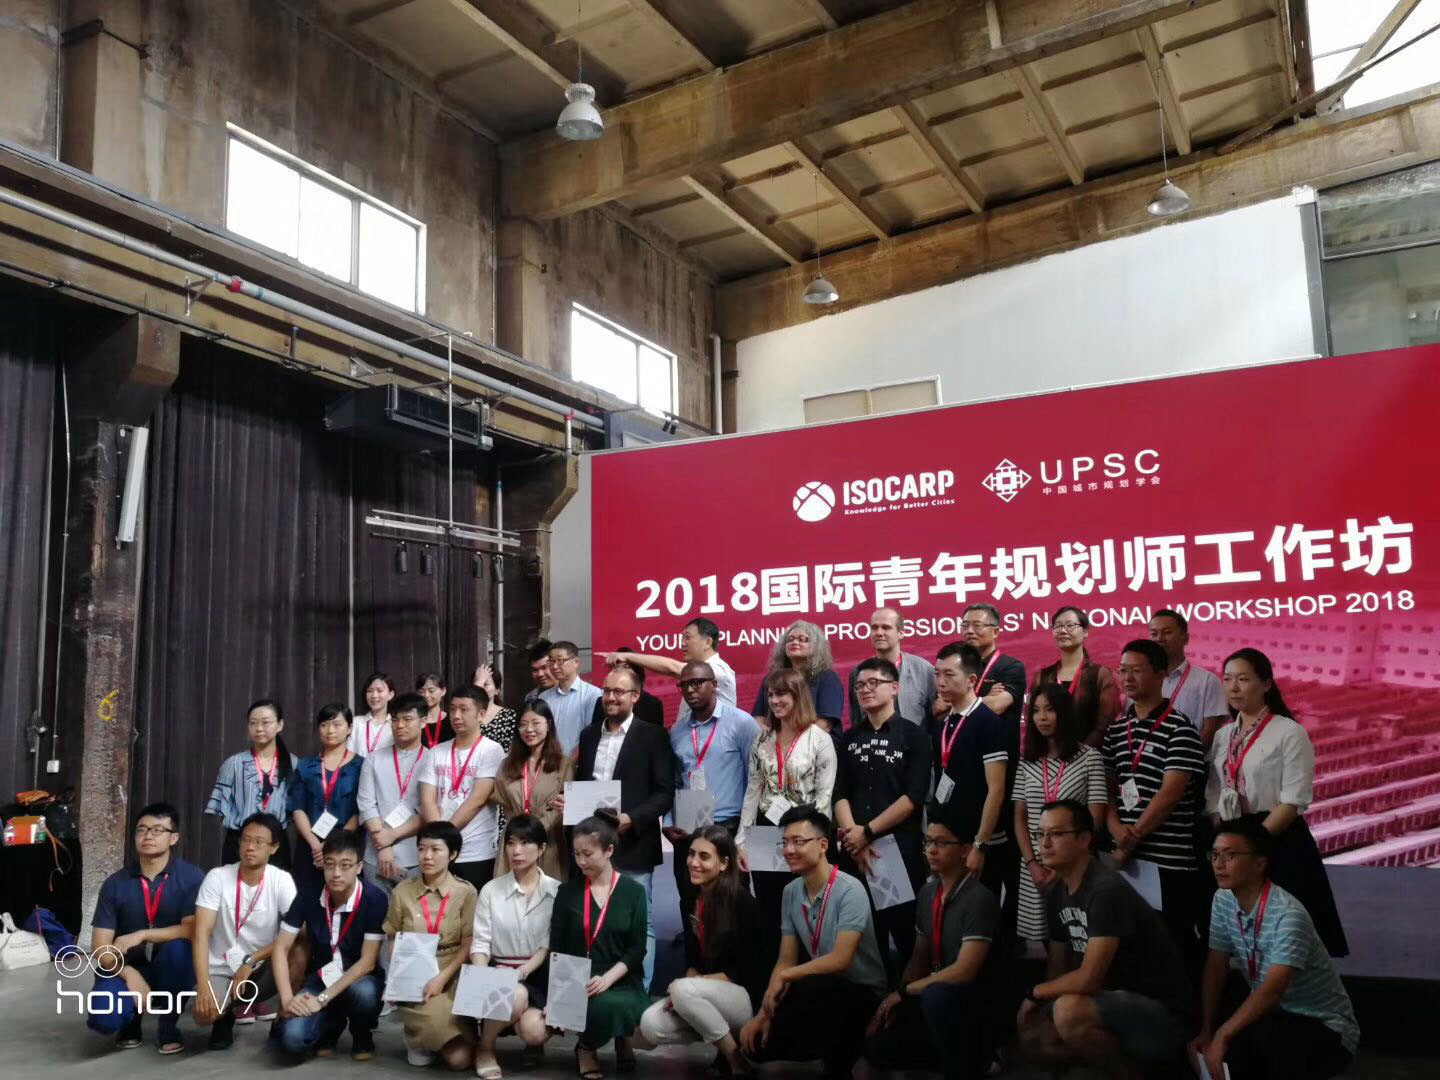 尚语翻译为2018年国际青年规划师工作坊大会提供同传翻译服务